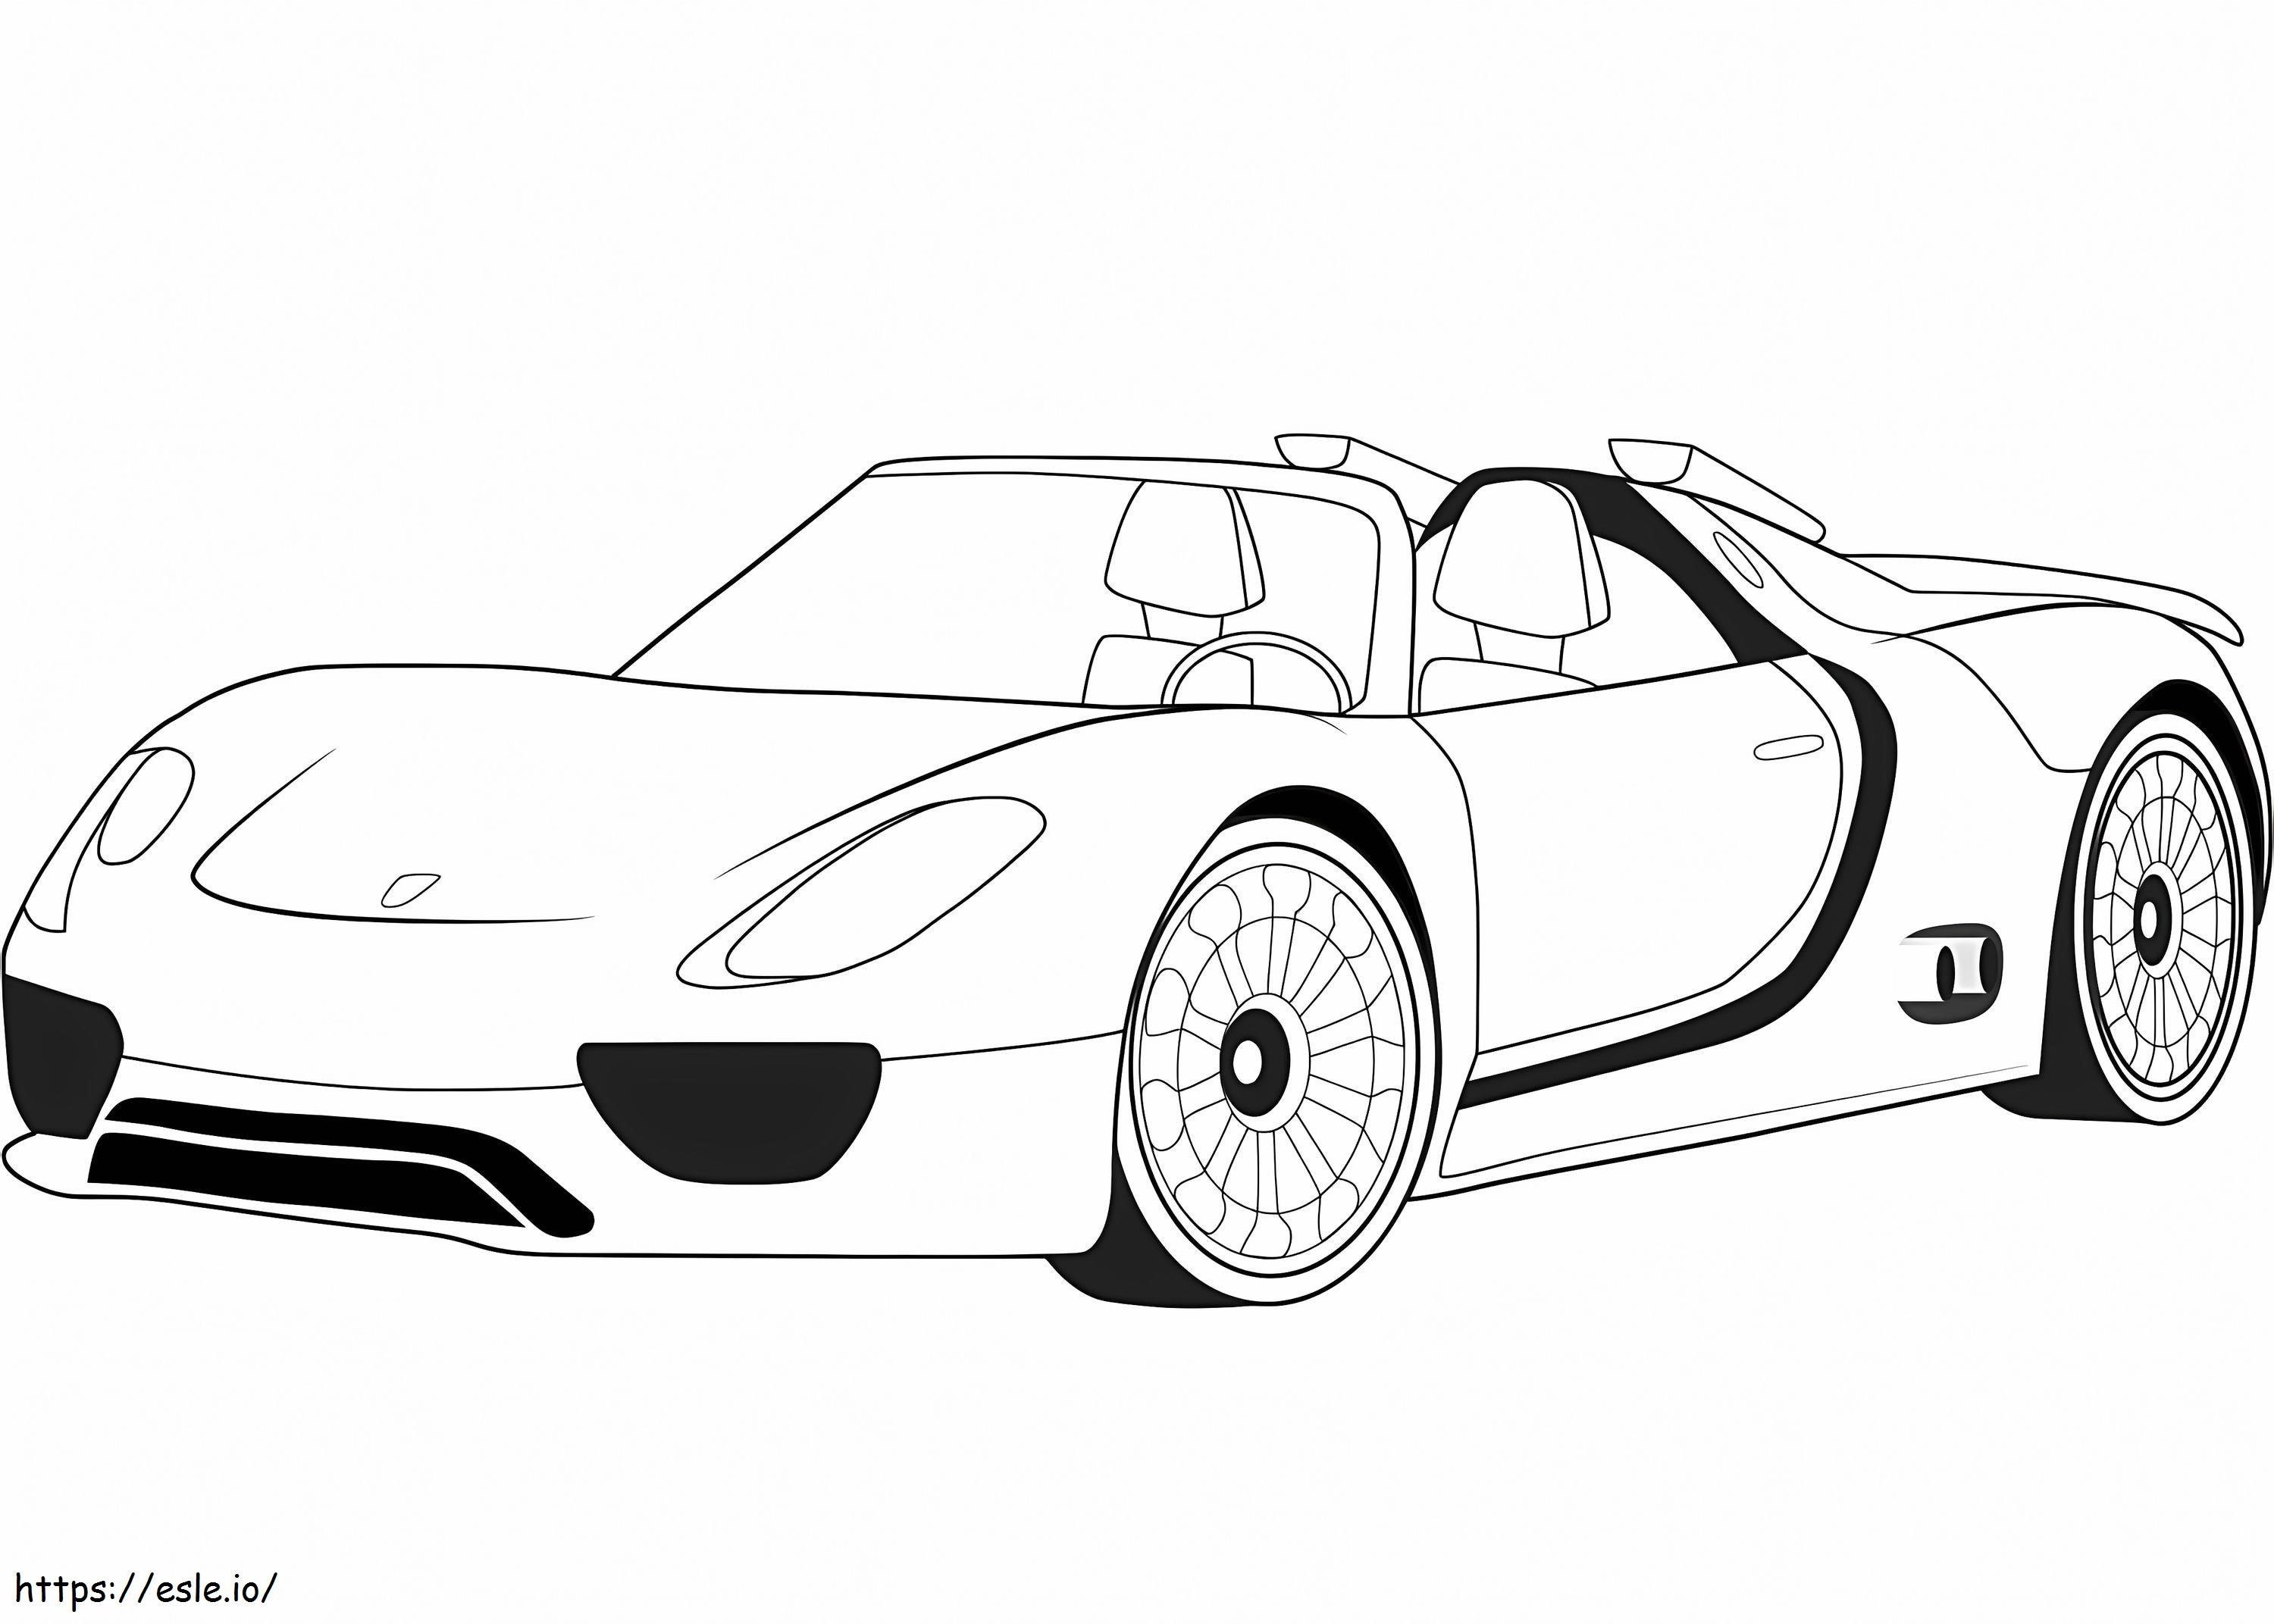 Concepto Porsche 918 Spyder para colorear